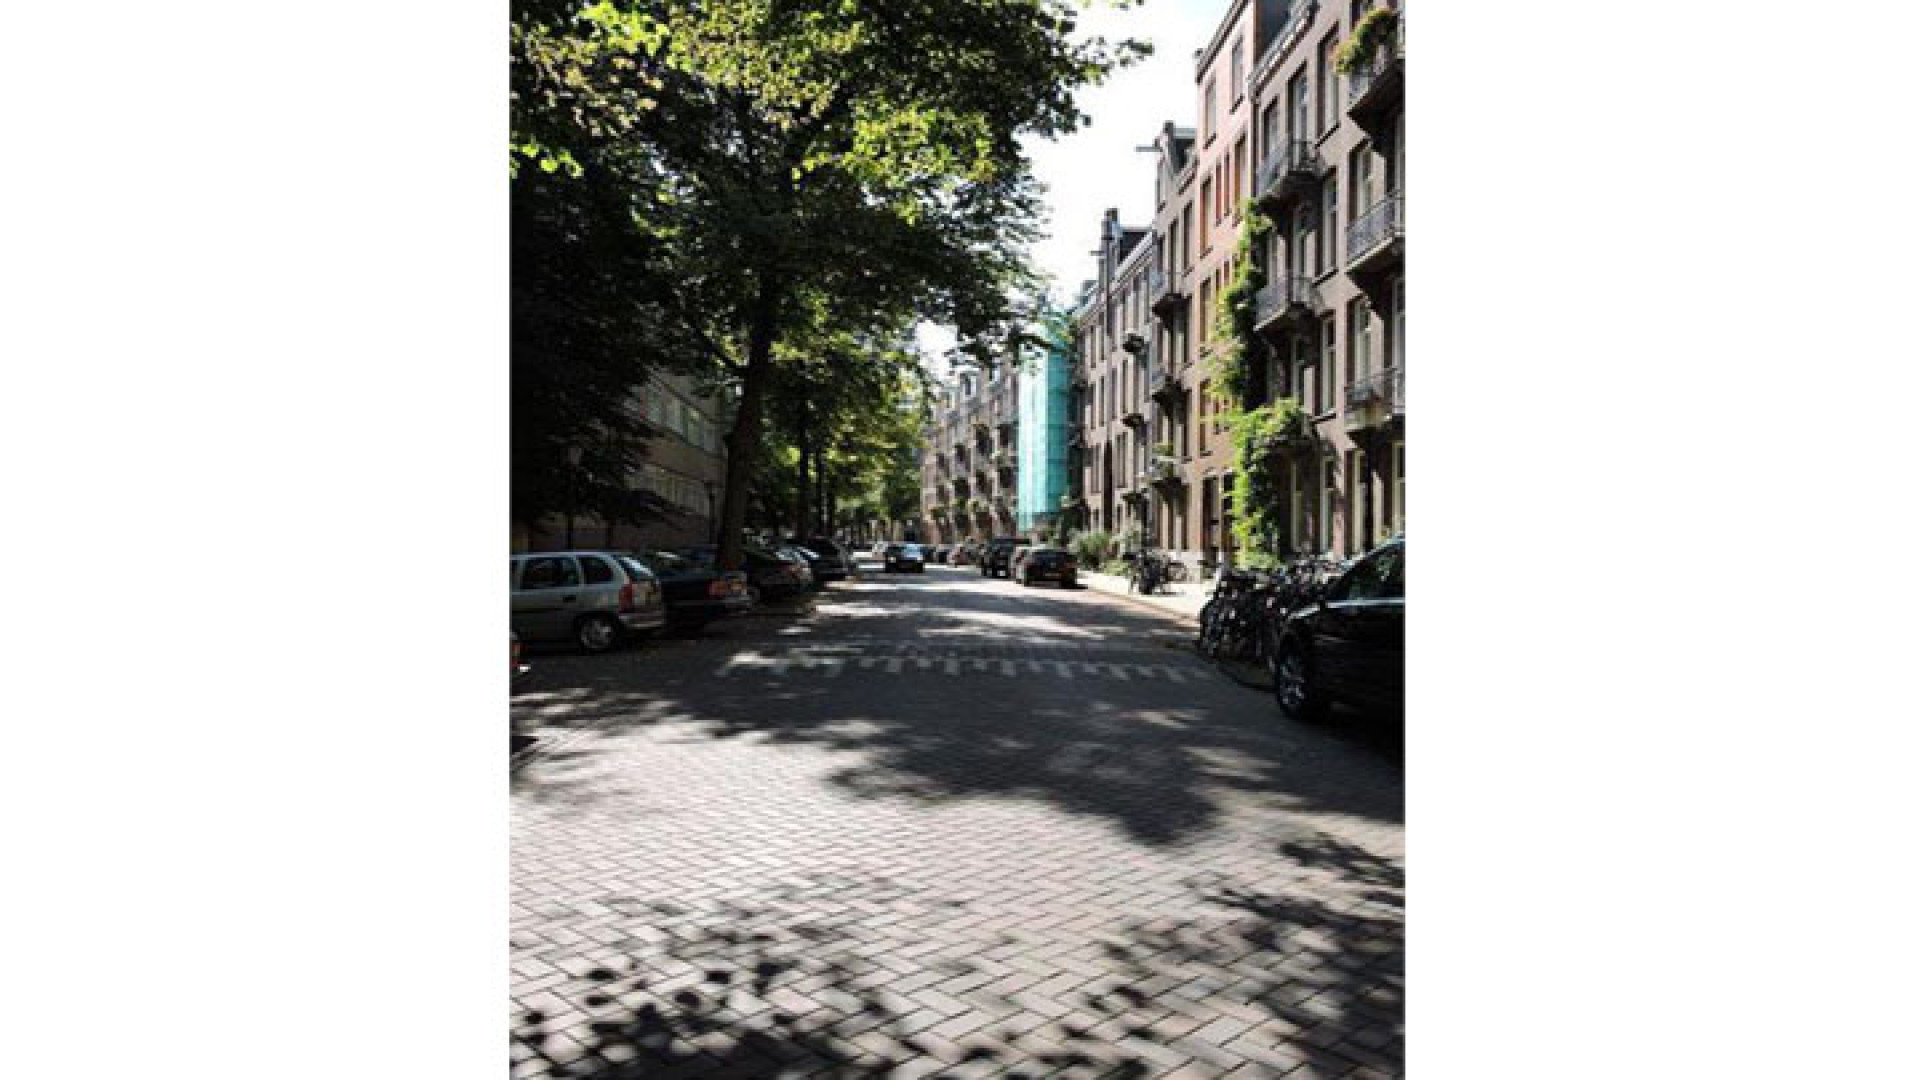 Marvin Breukhoven ruilt Haags optrekje in voor appartement in Amsterdam Oud Zuid. Zie foto's 1